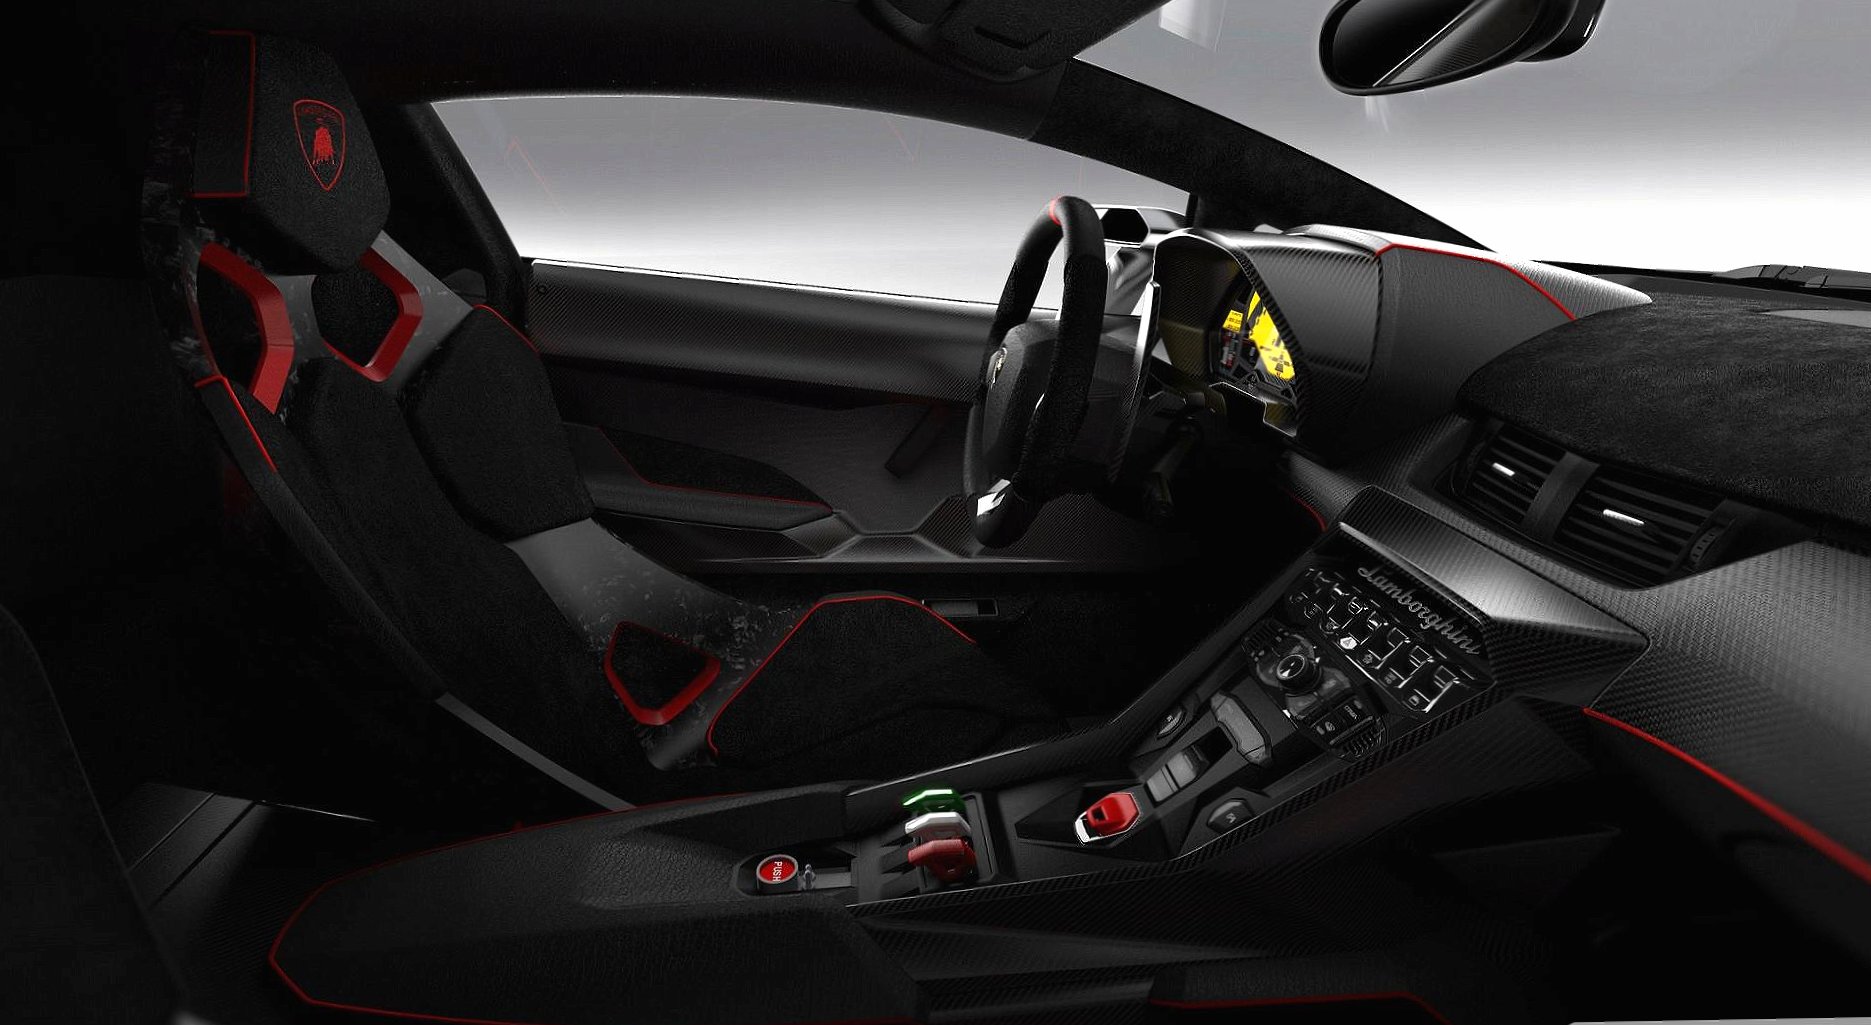 Lamborghini veneno interior at 1152 x 864 size wallpapers HD quality